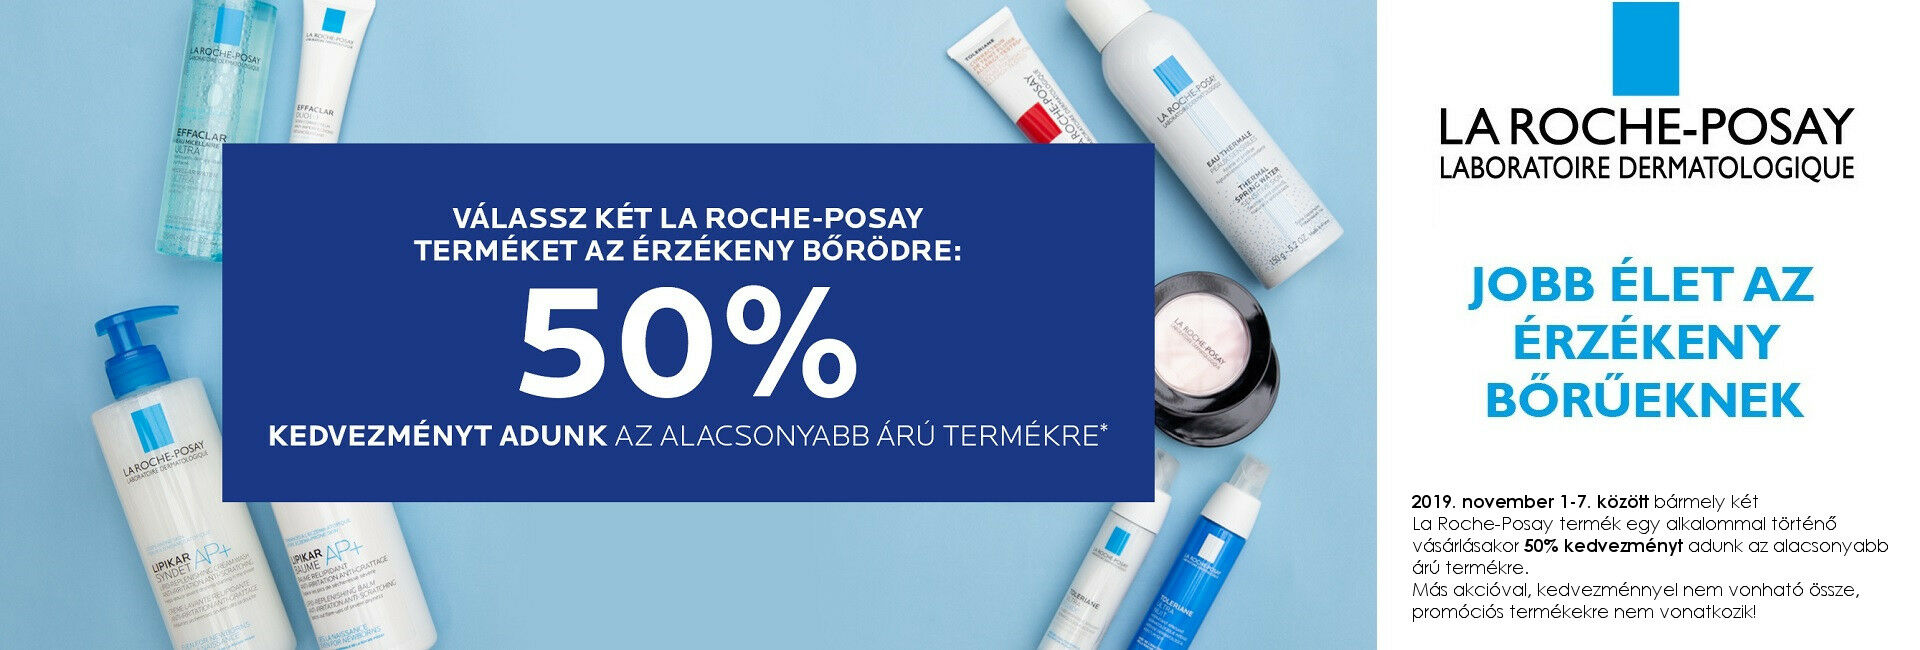 2019. november 1-7. között a második La Roche-Posay termékre 50% kedvezményt adunk!